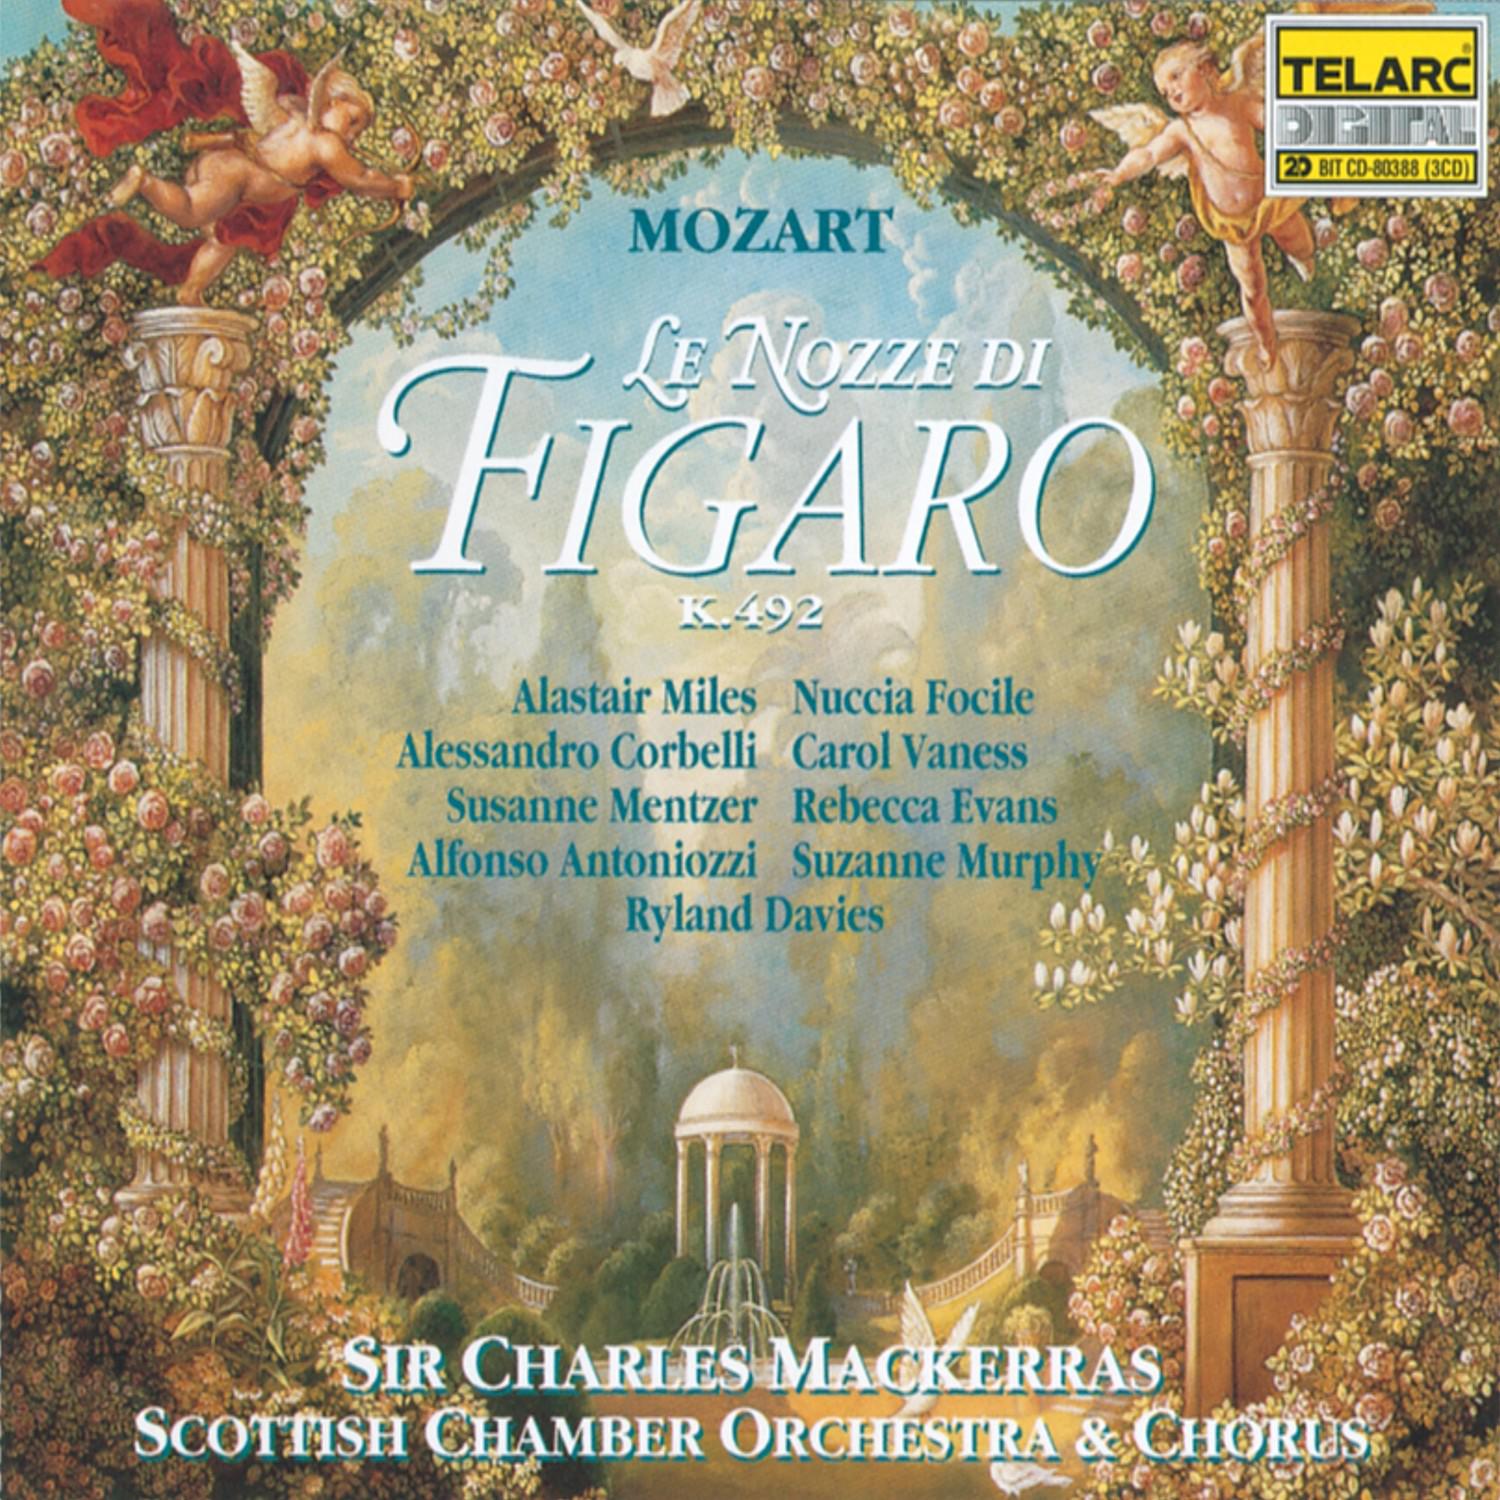 Marriage of Figaro: Recitativo: "Andiam, andiam, bel paggio"